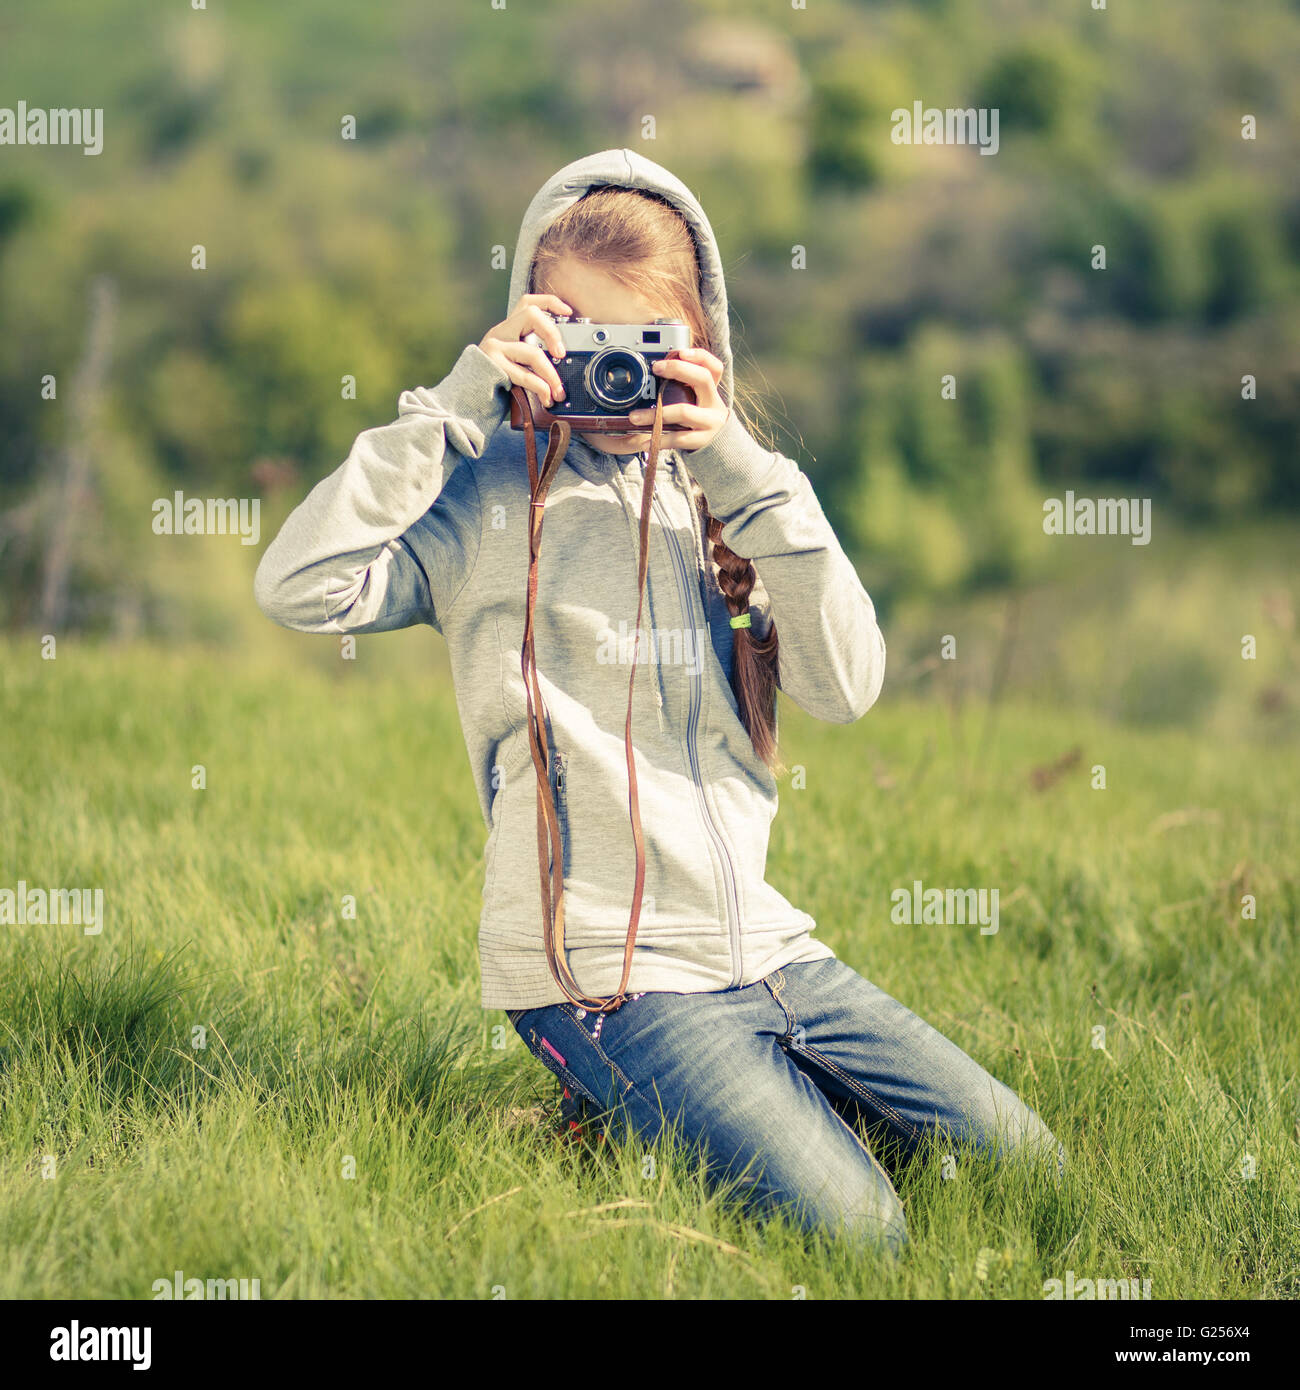 Kleinen Teenager-Mädchen nehmen Foto mit alten Kamera im Freien. Teenager Mädchen lernen Fotografie mit Retro-Film-Kamera Stockfoto